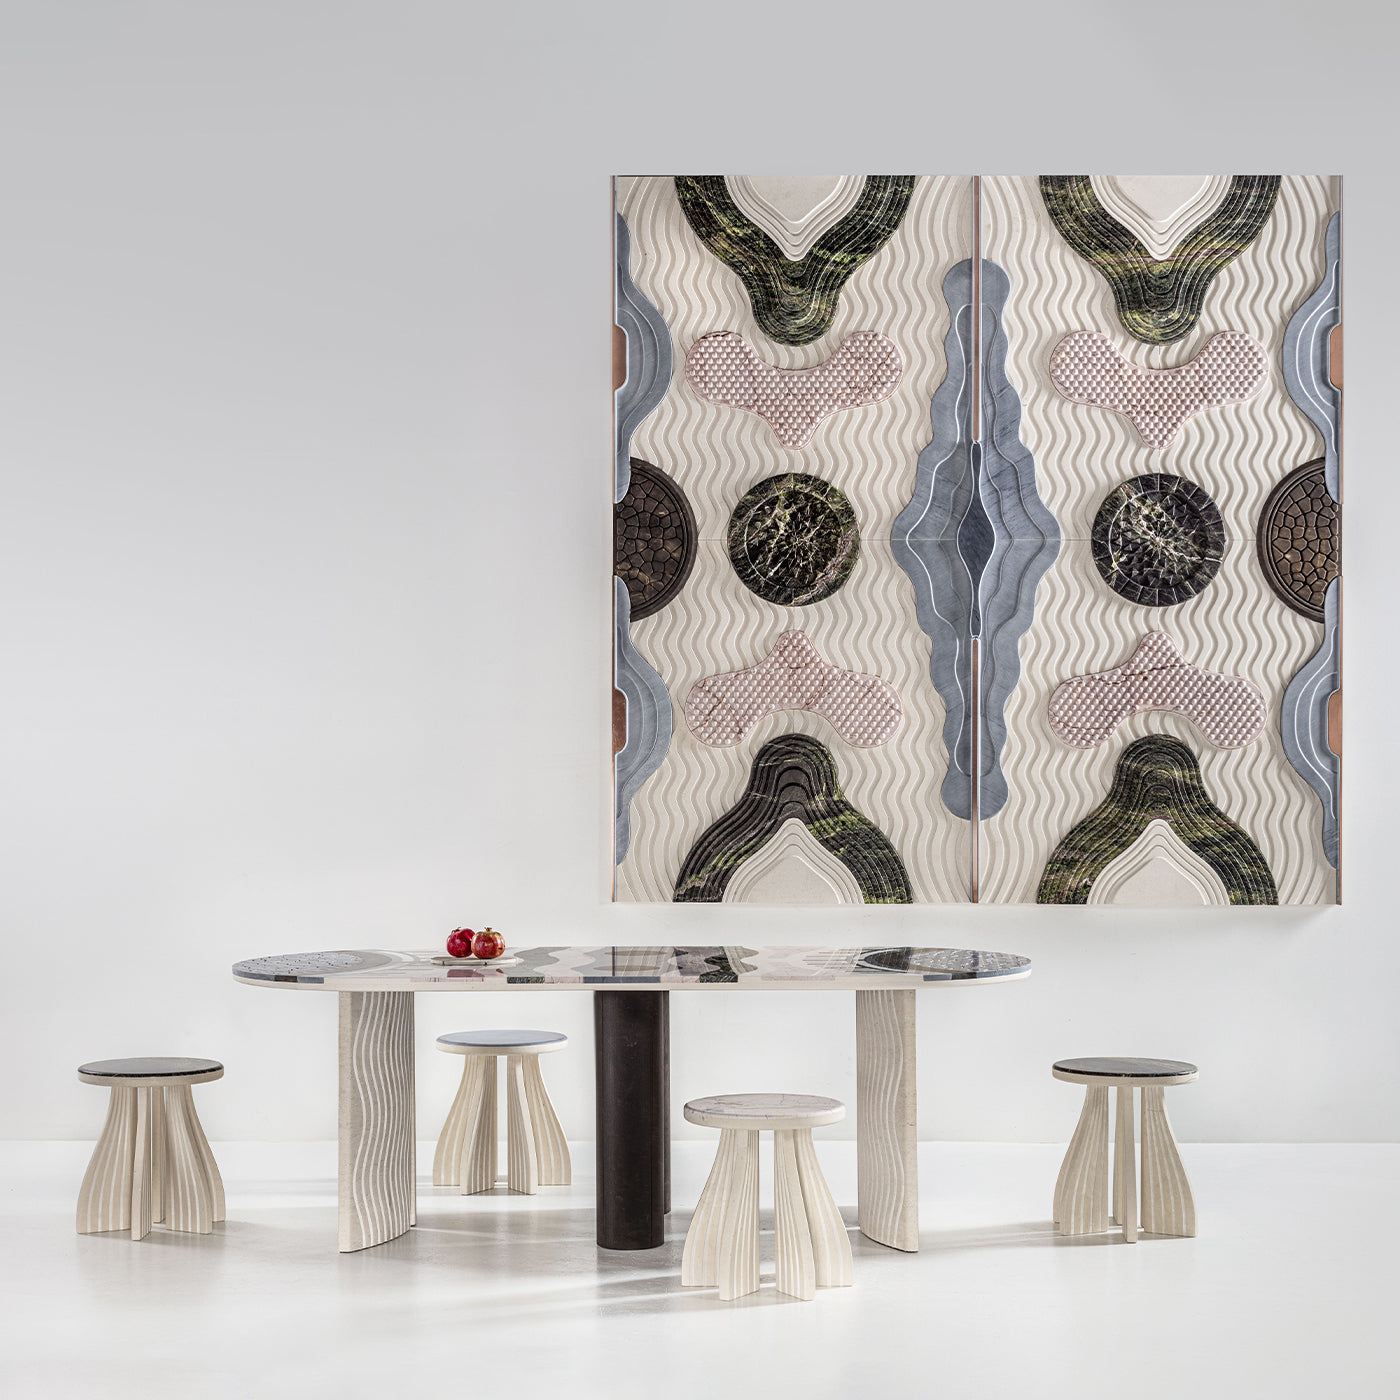 Specchio di Venere Dining Table by Elena Salmistraro - Alternative view 2